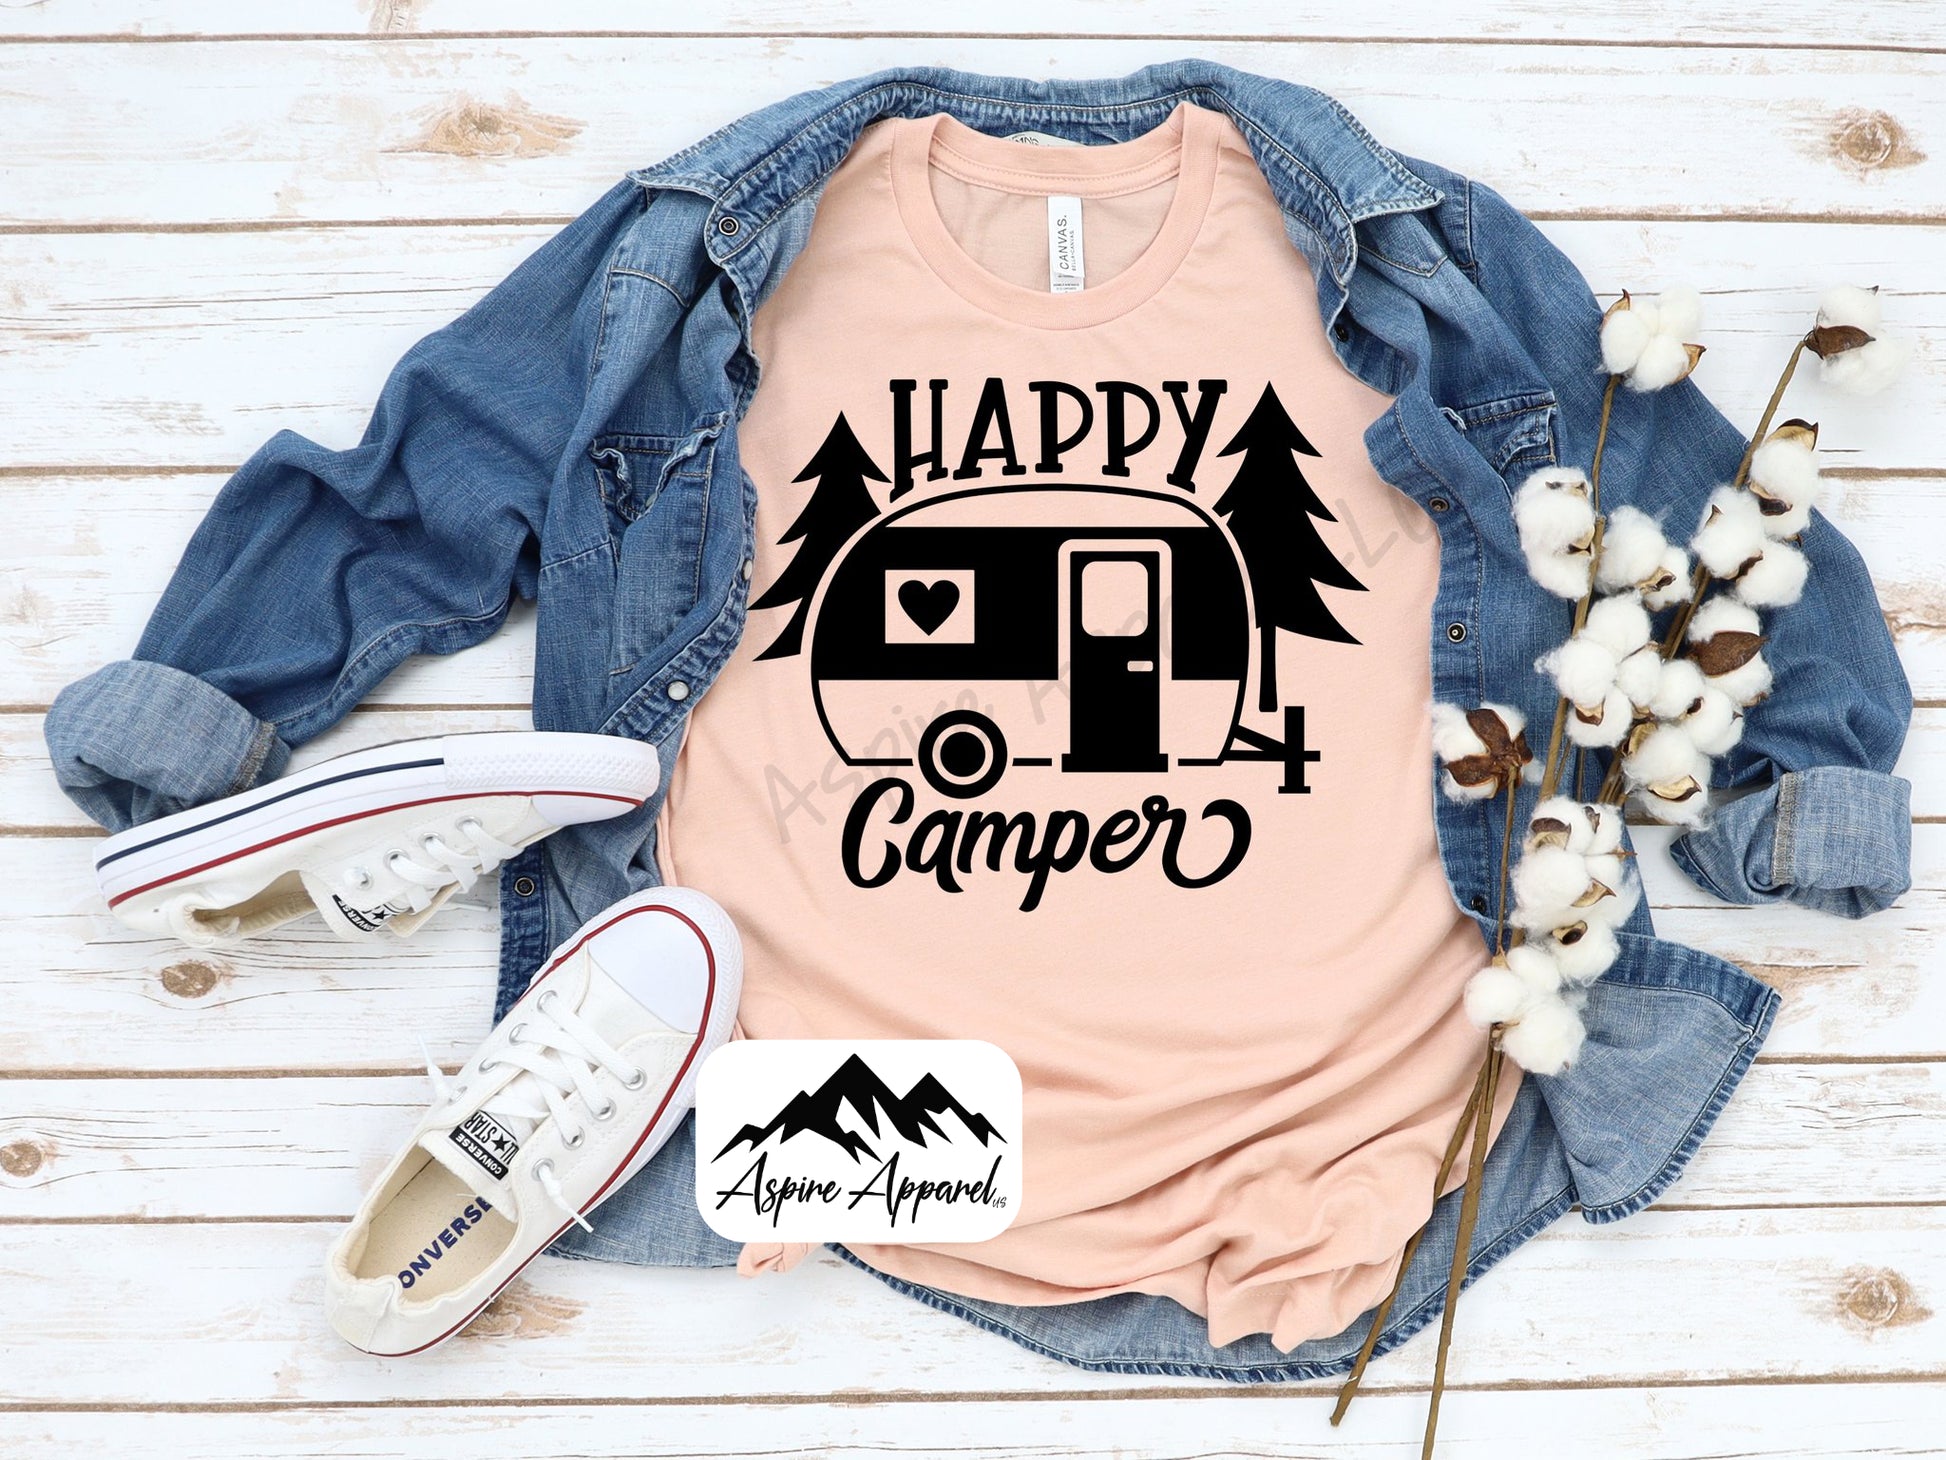 Happy Camper Script wit Cute Camper and Trees